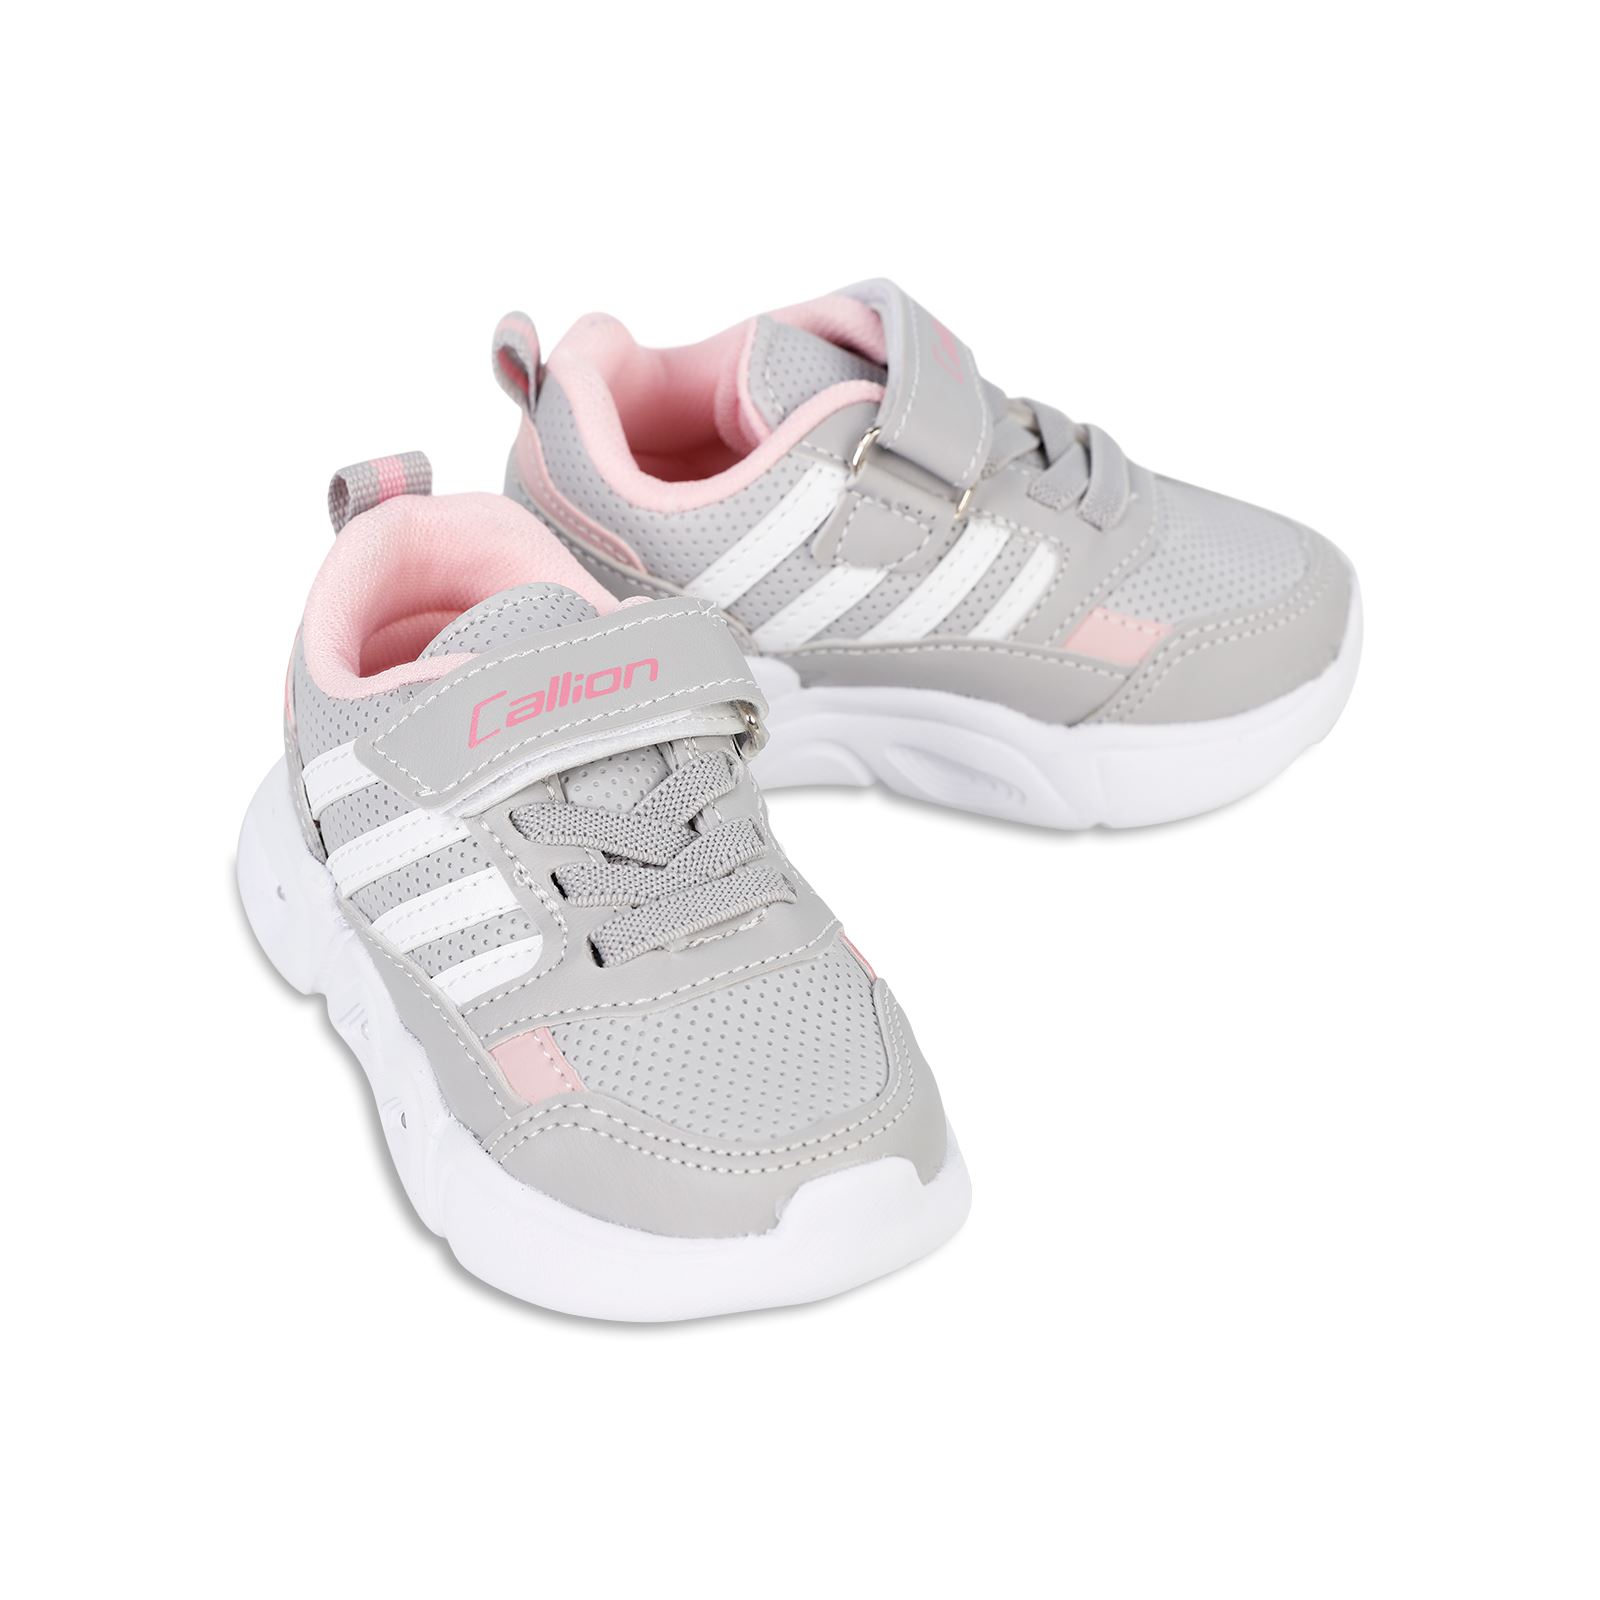 Callion Kız Çocuk Işıklı Spor Ayakkabı 22-25 Numara Beyaz